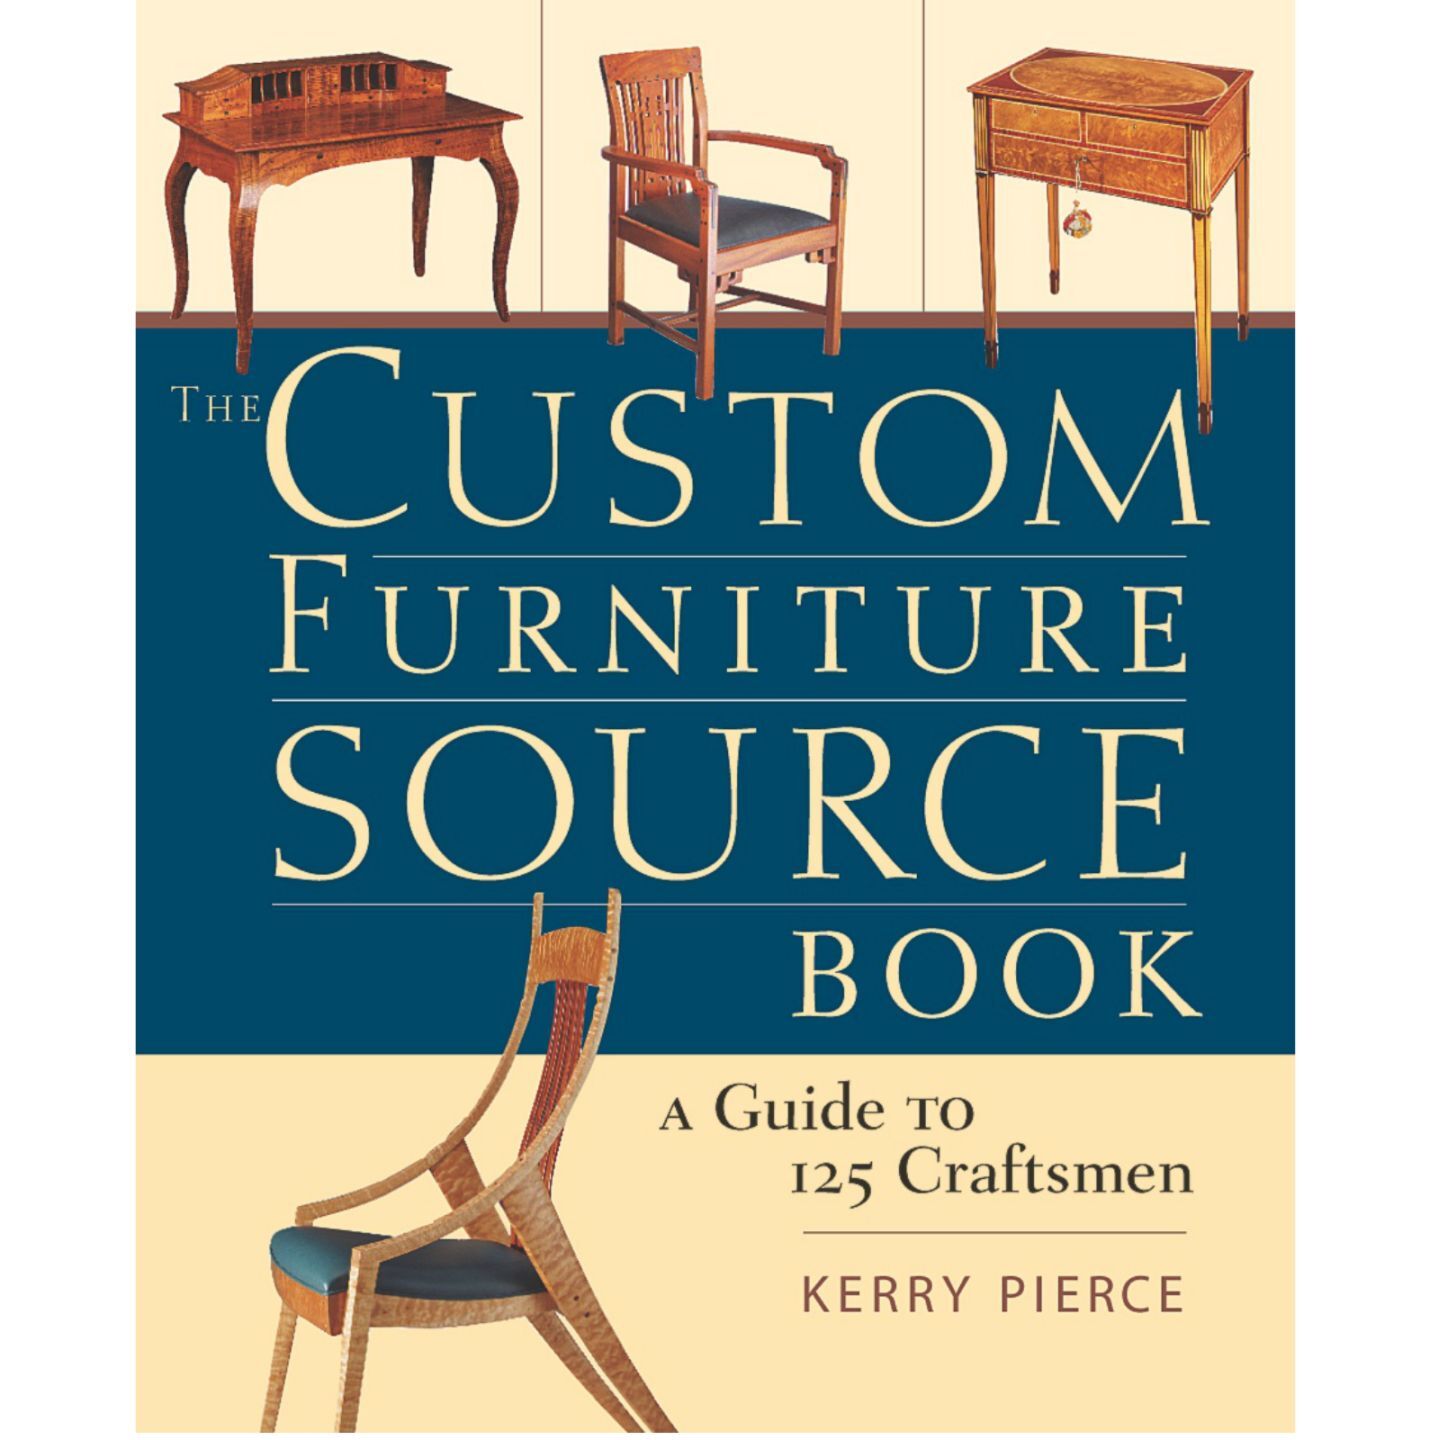 The Custom Furniture Source Book: A Guide to 125 Craftsmen